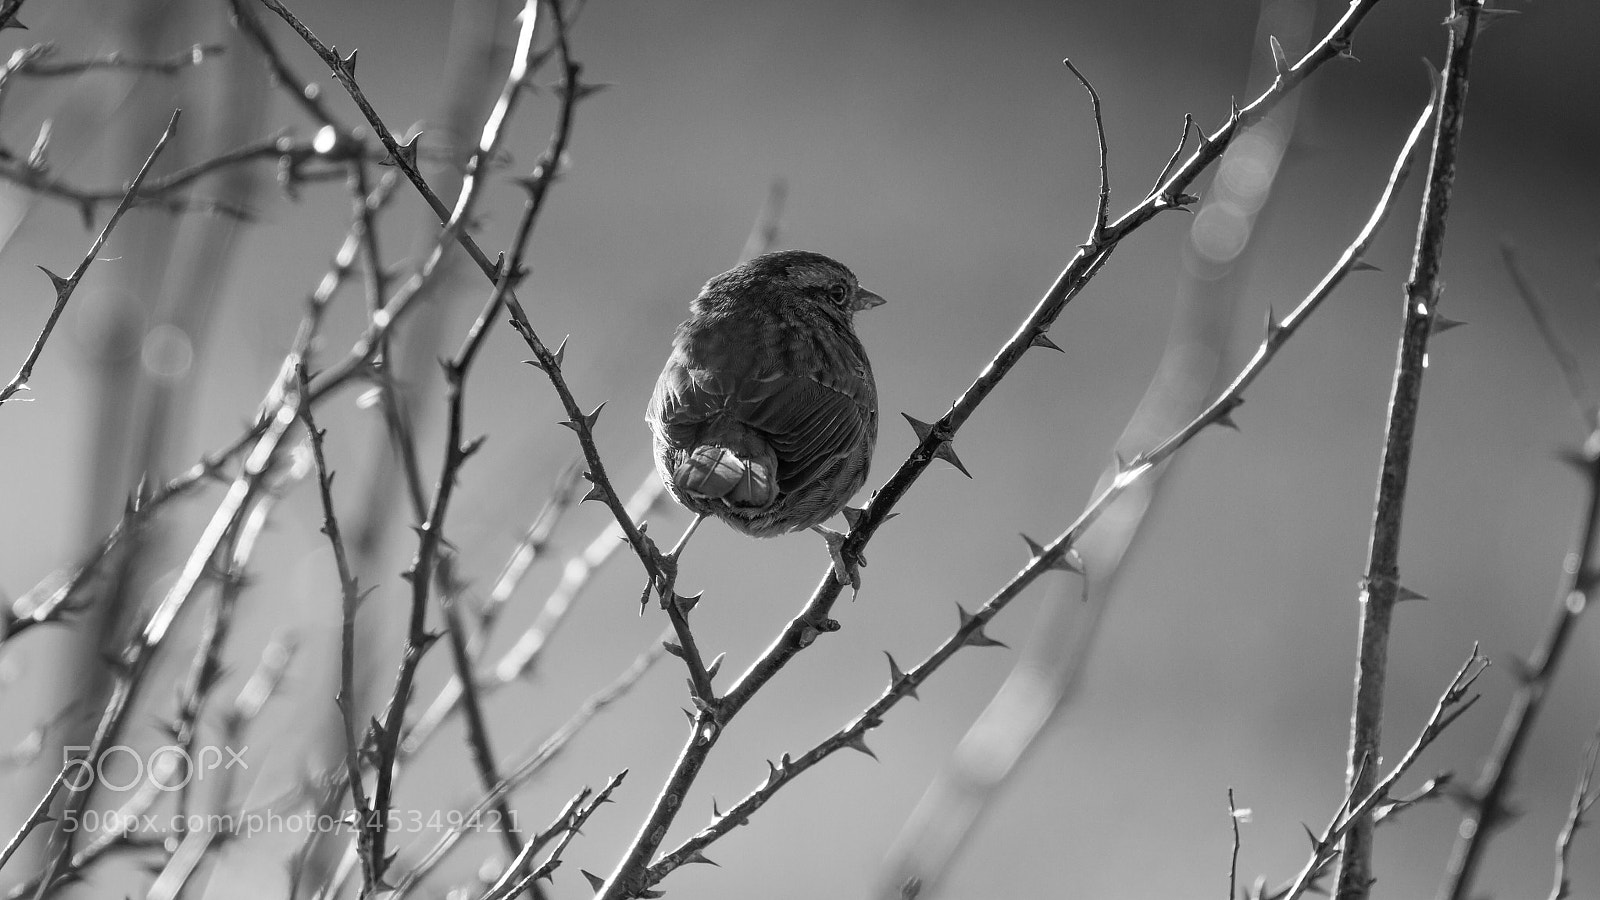 Canon EOS 7D sample photo. Song sparrow photography